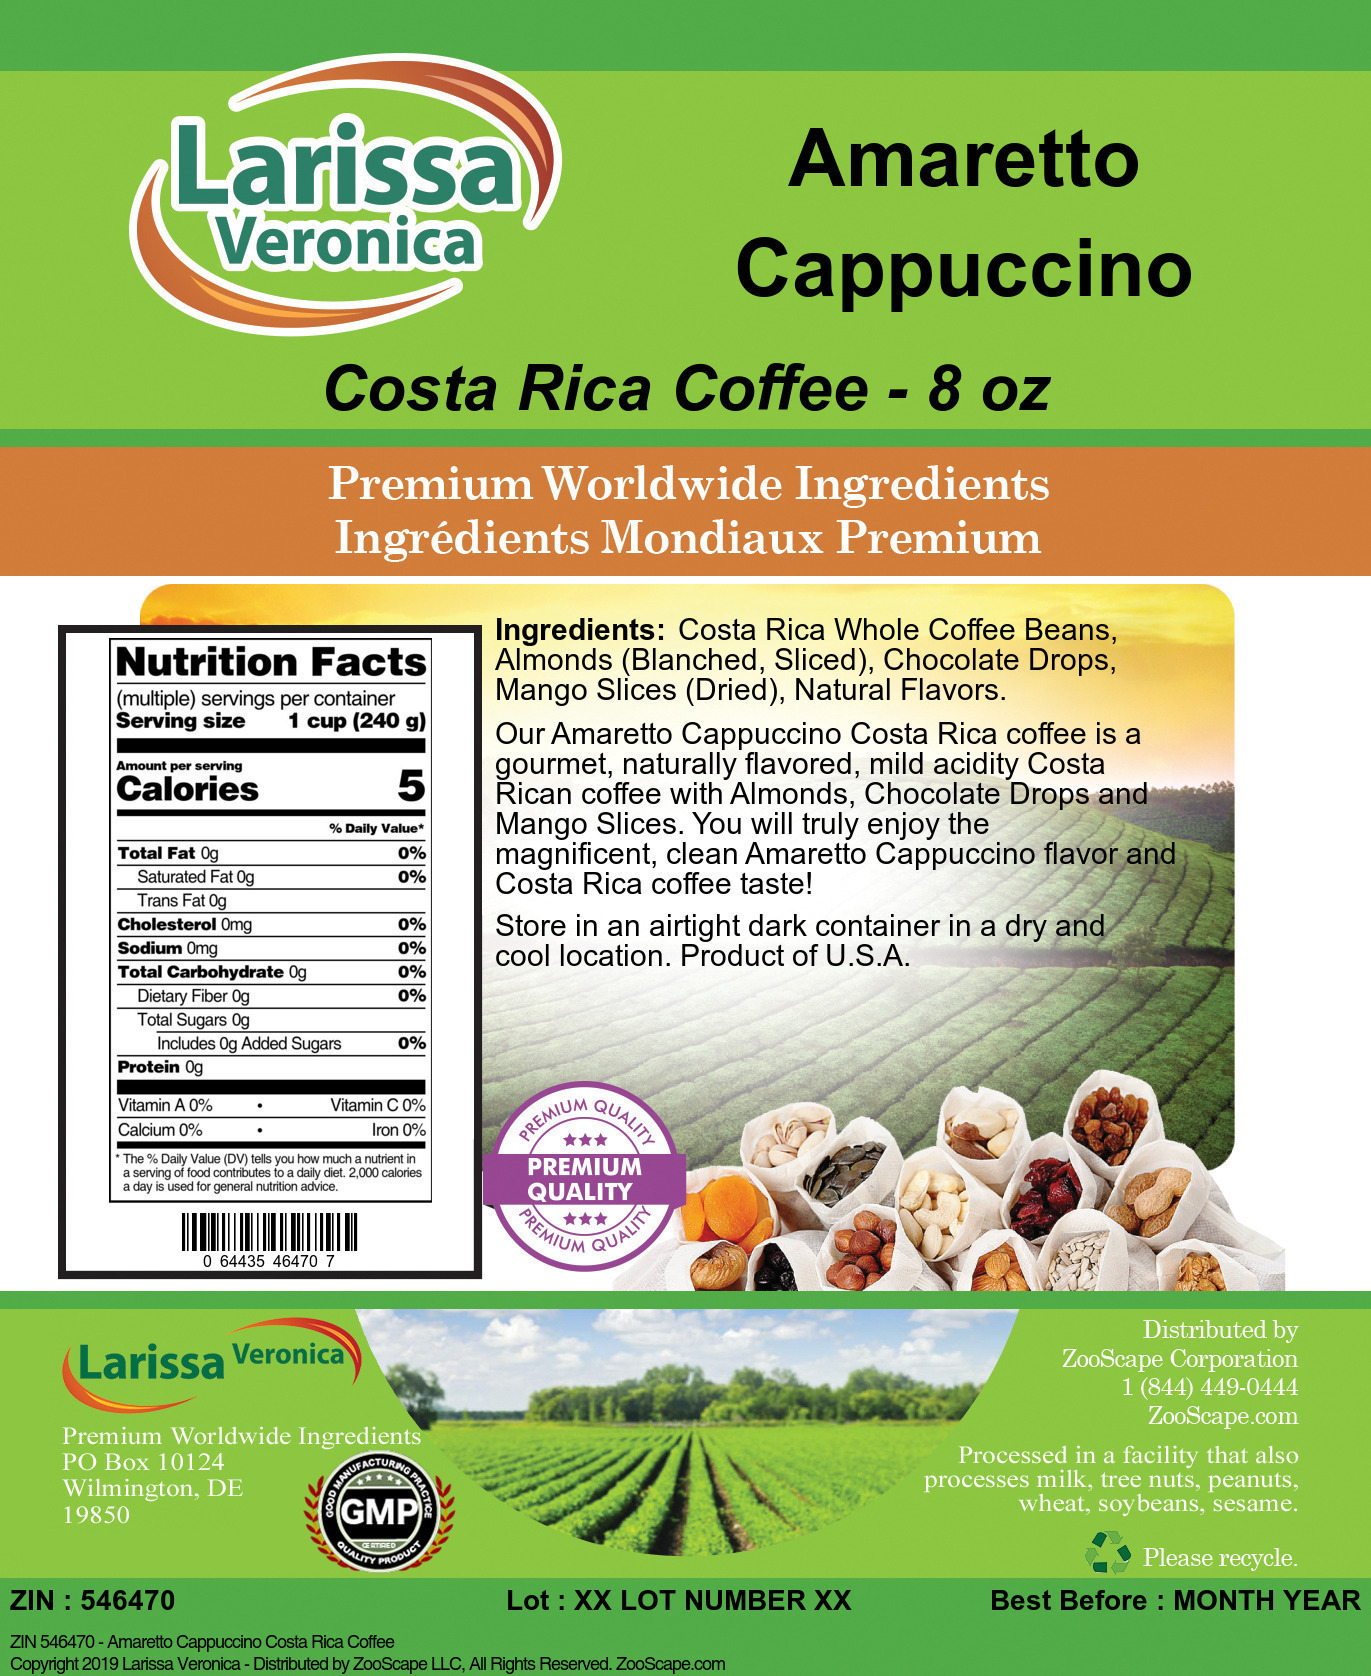 Amaretto Cappuccino Costa Rica Coffee - Label